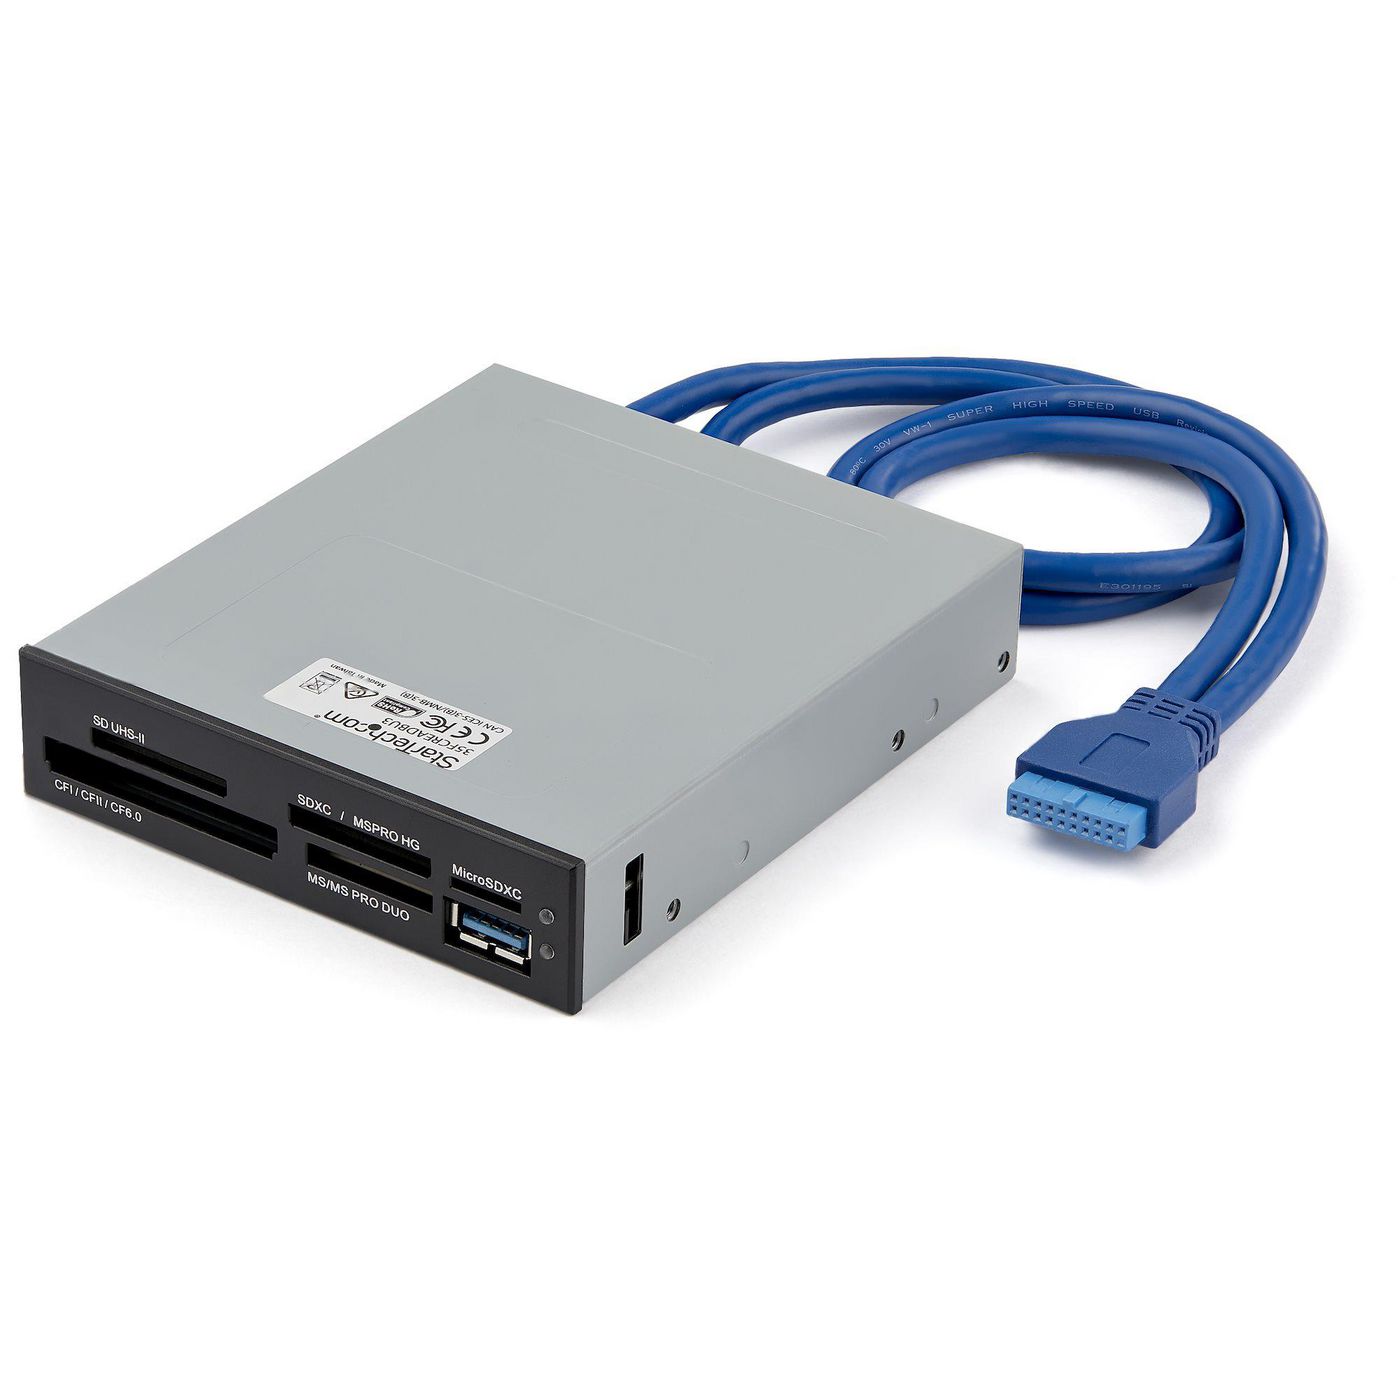 STARTECH.COM USB 3.0 interner Kartenleser mit UHS-II Unterstützung - SecureDigital/Micro SD/MemorySt